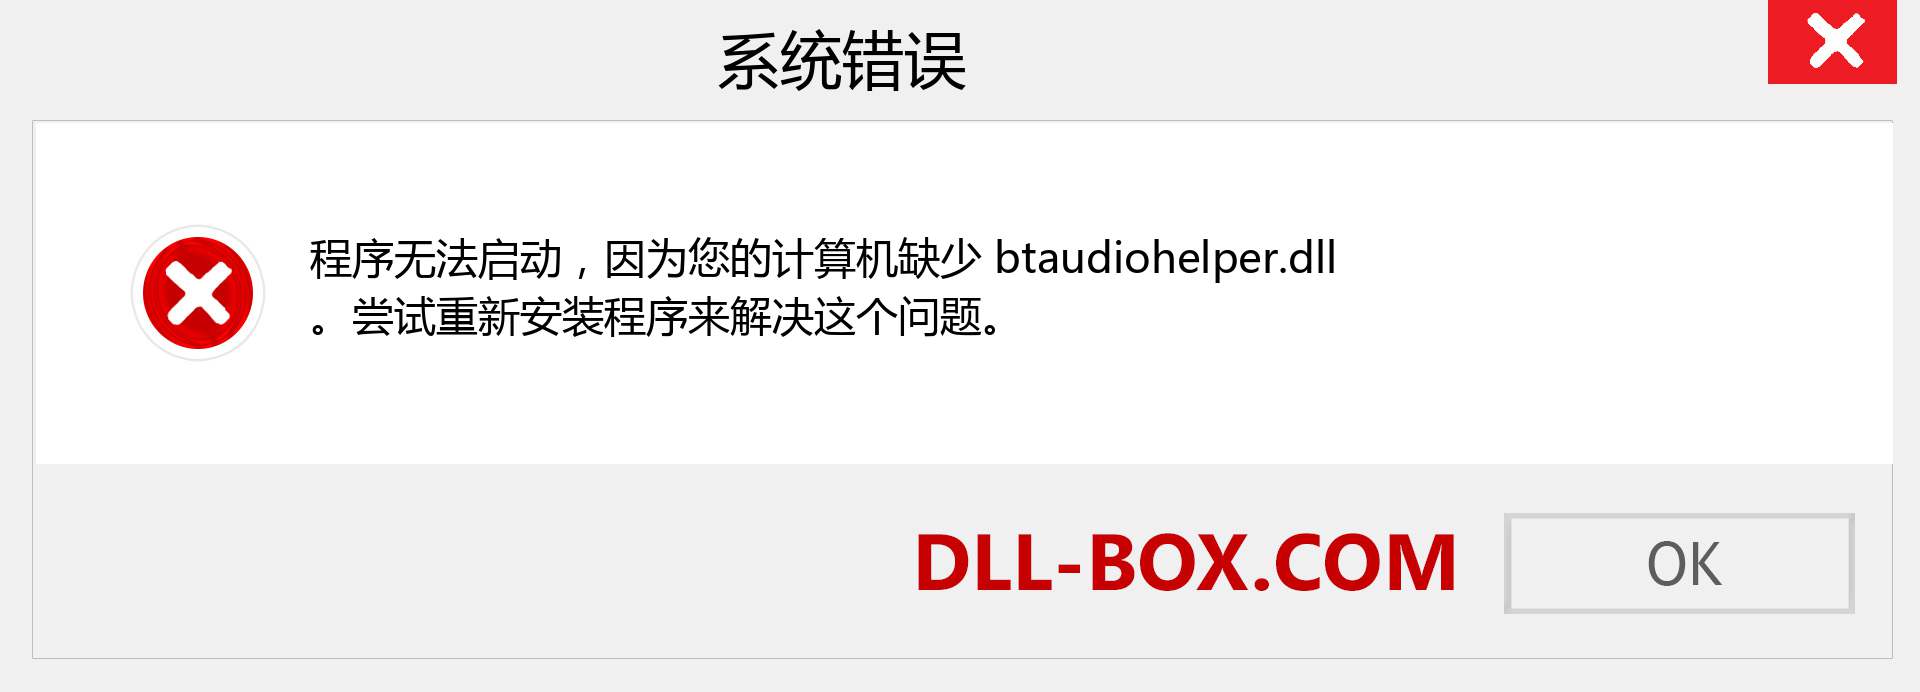 btaudiohelper.dll 文件丢失？。 适用于 Windows 7、8、10 的下载 - 修复 Windows、照片、图像上的 btaudiohelper dll 丢失错误